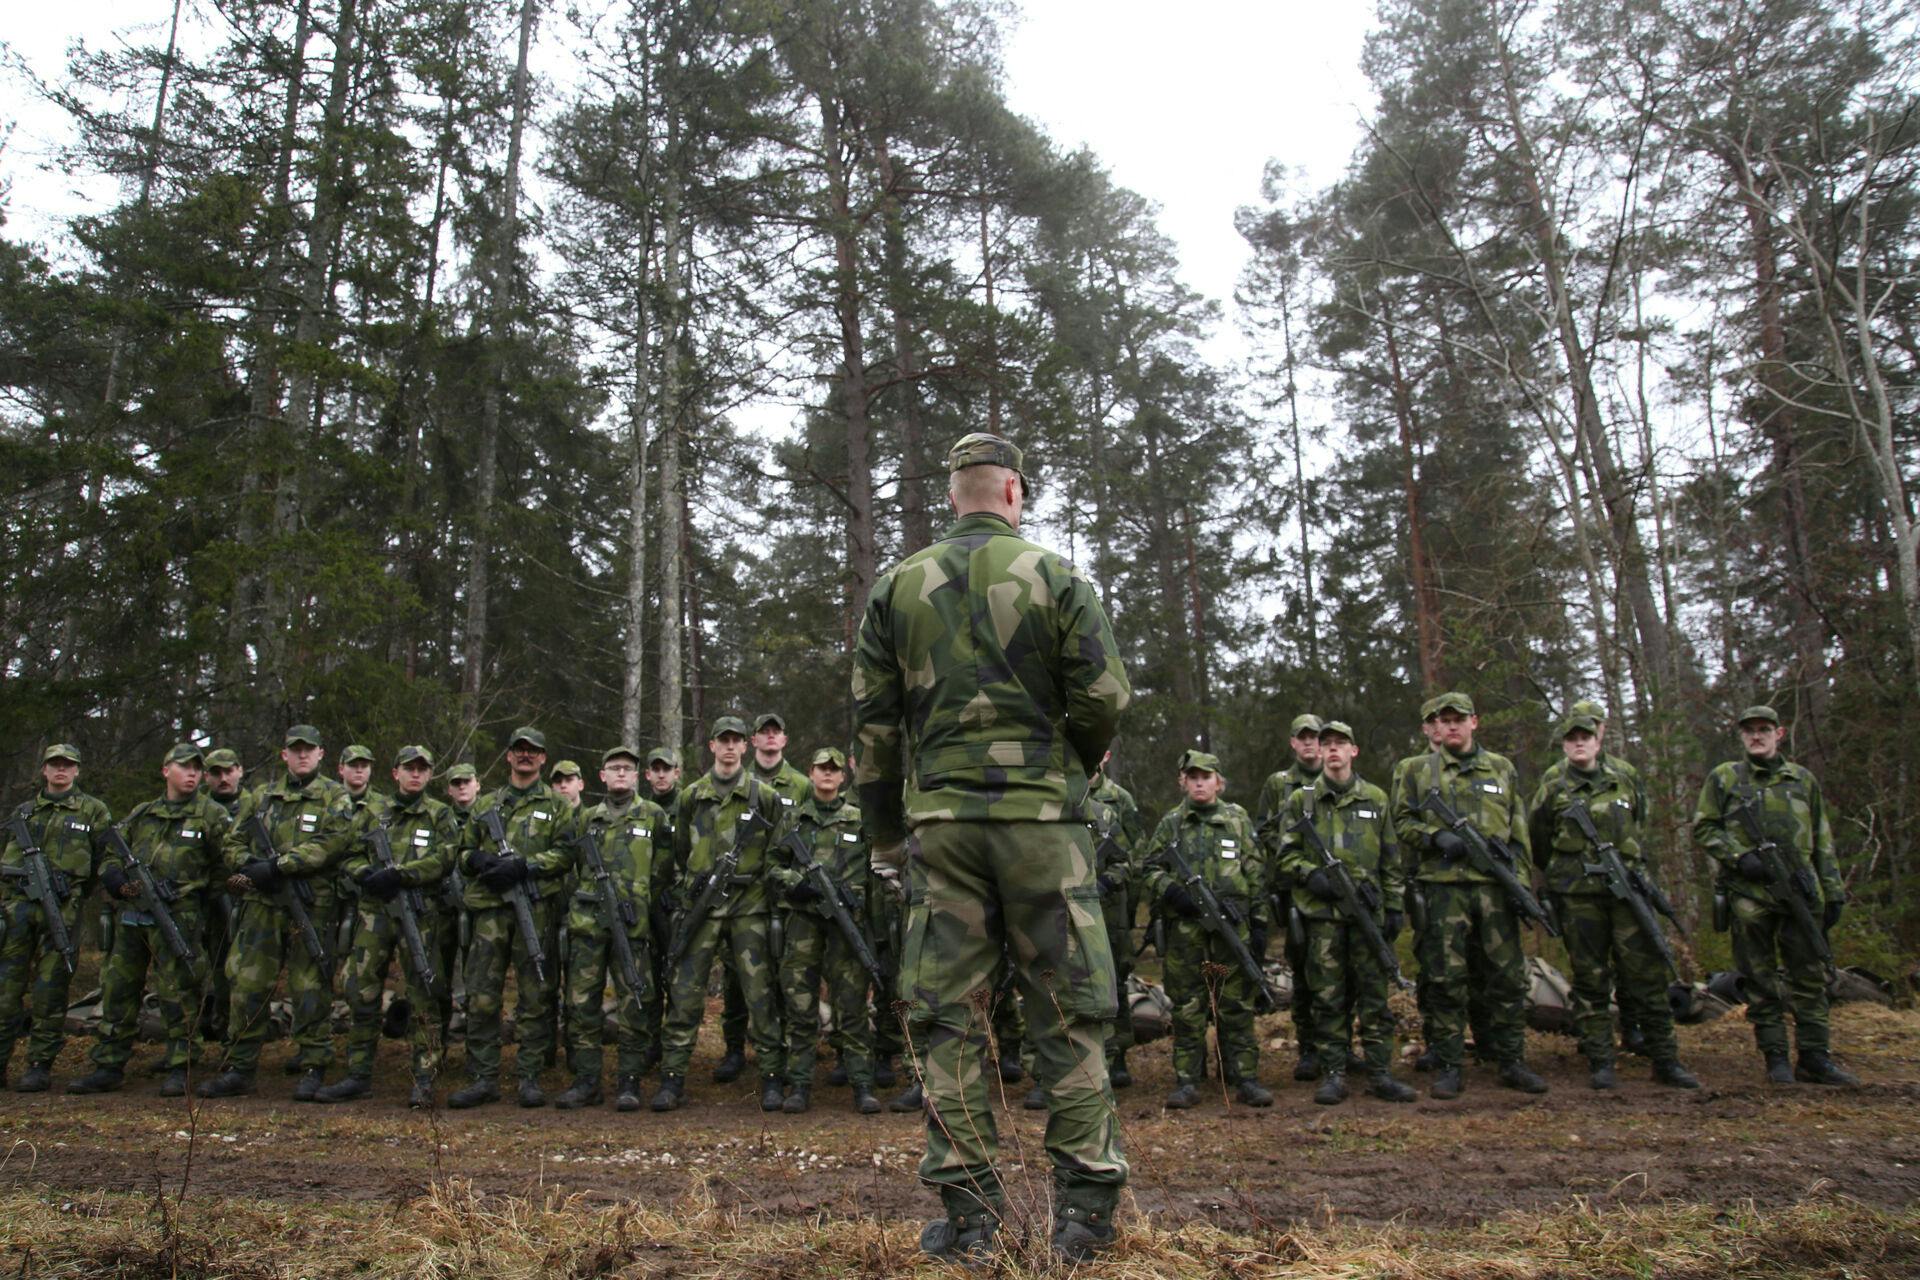 Rusland kan forvente kontant modstand, hvis diktatoren Putin får gode ideer om at "indtage" Nato-lande. Det gælder også her i det seneste medlem Sverige, hvor Gotland er en vigtig front mod russisk invation.